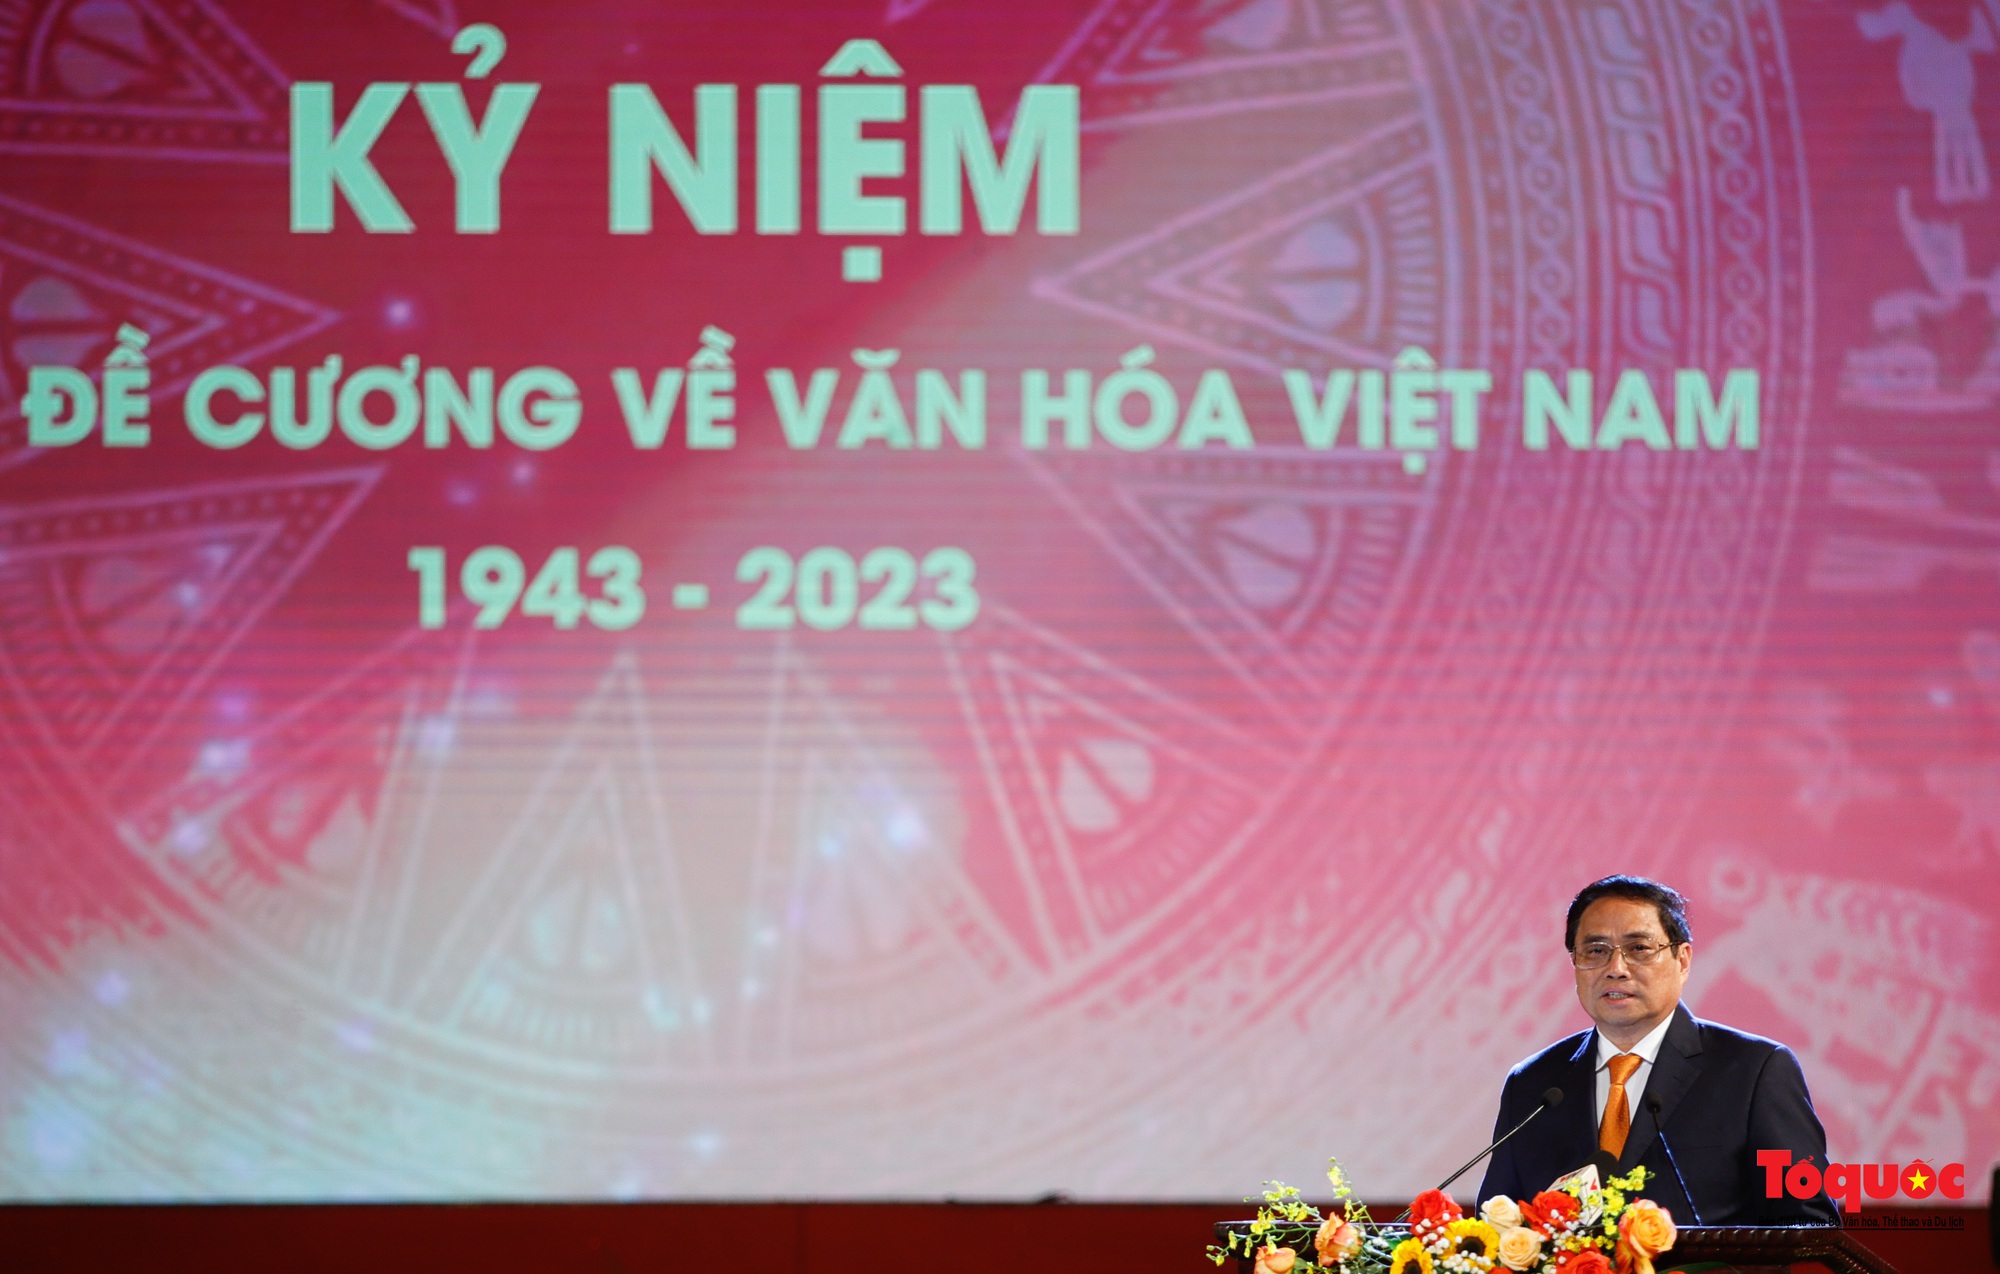 Chùm ảnh: Lễ kỷ niệm và chương trình nghệ thuật đặc biệt kỷ niệm 80 năm ra đời Đề cương văn hóa Việt Nam - Ảnh 7.